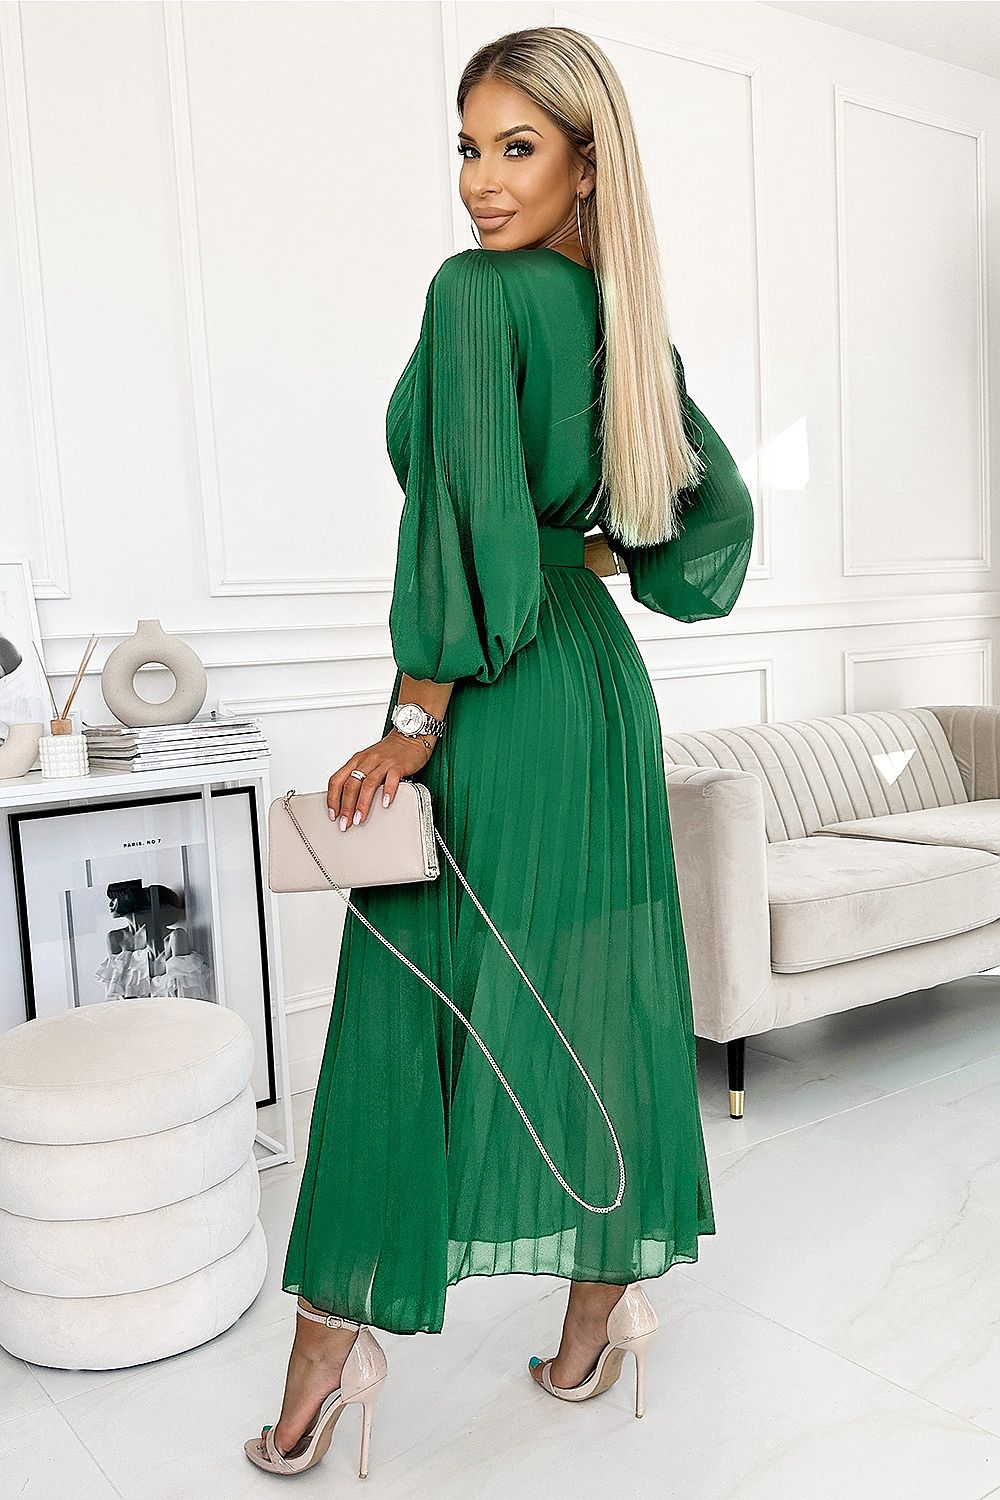 Plisované šifónové šaty s výstrihom, dlhým rukávom a opaskom. Plisovanie na výstrihu a rukávoch dodáva šatám eleganciu. Šaty sú vo farbe zelenej.   Formálne šaty, koktejlové Maxi šaty  Elastan5 %  Polyester95 % 